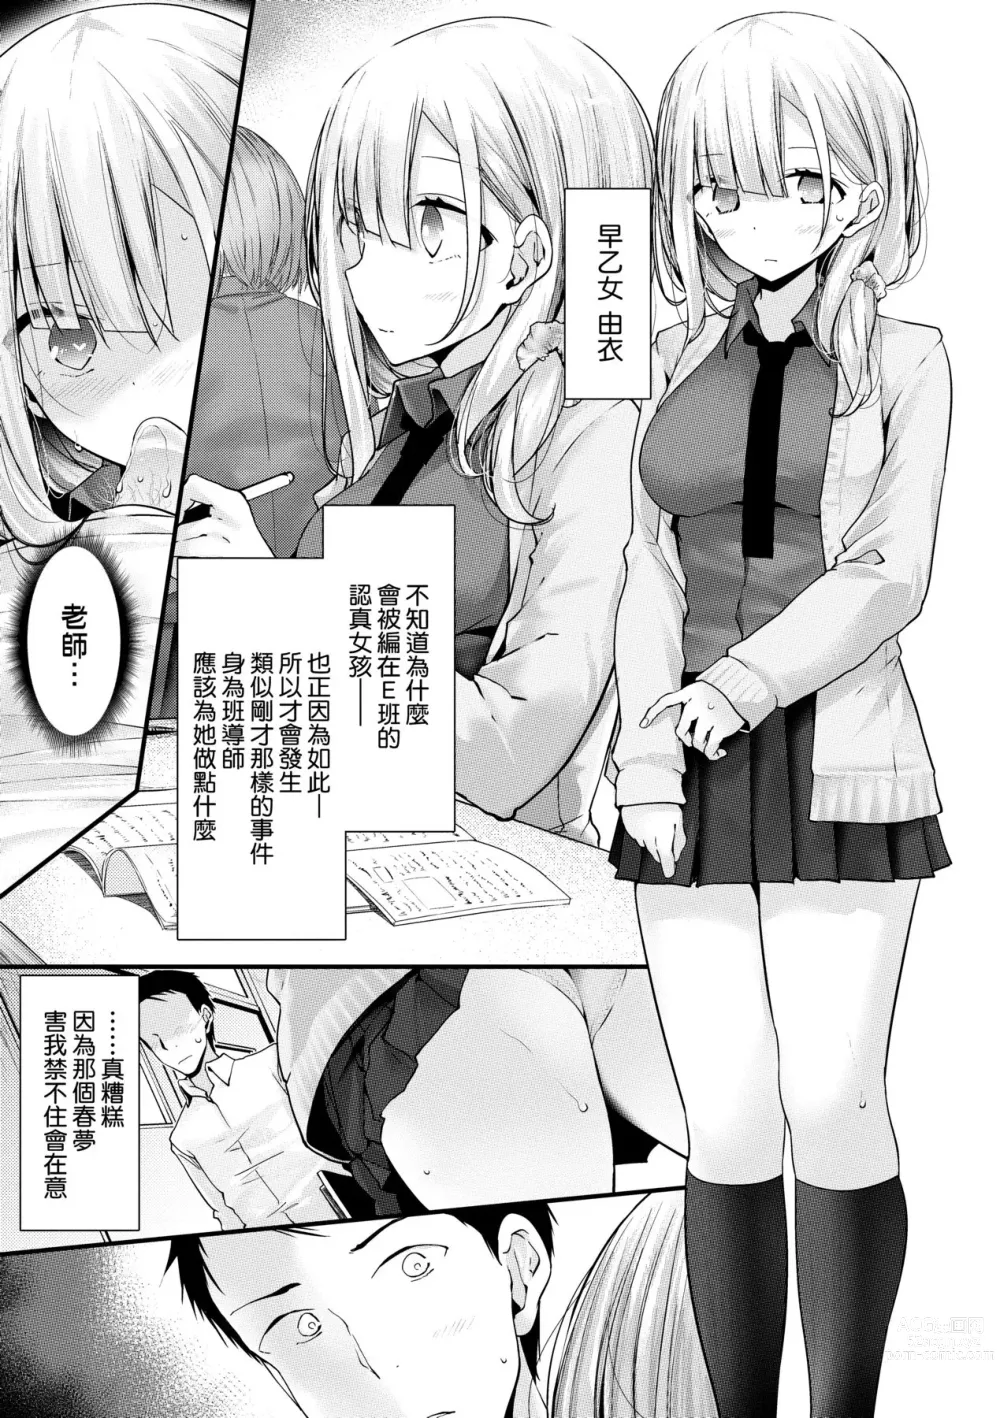 Page 12 of manga 自慰套教室-新學期- 女學生播種懲罰計畫 (decensored)